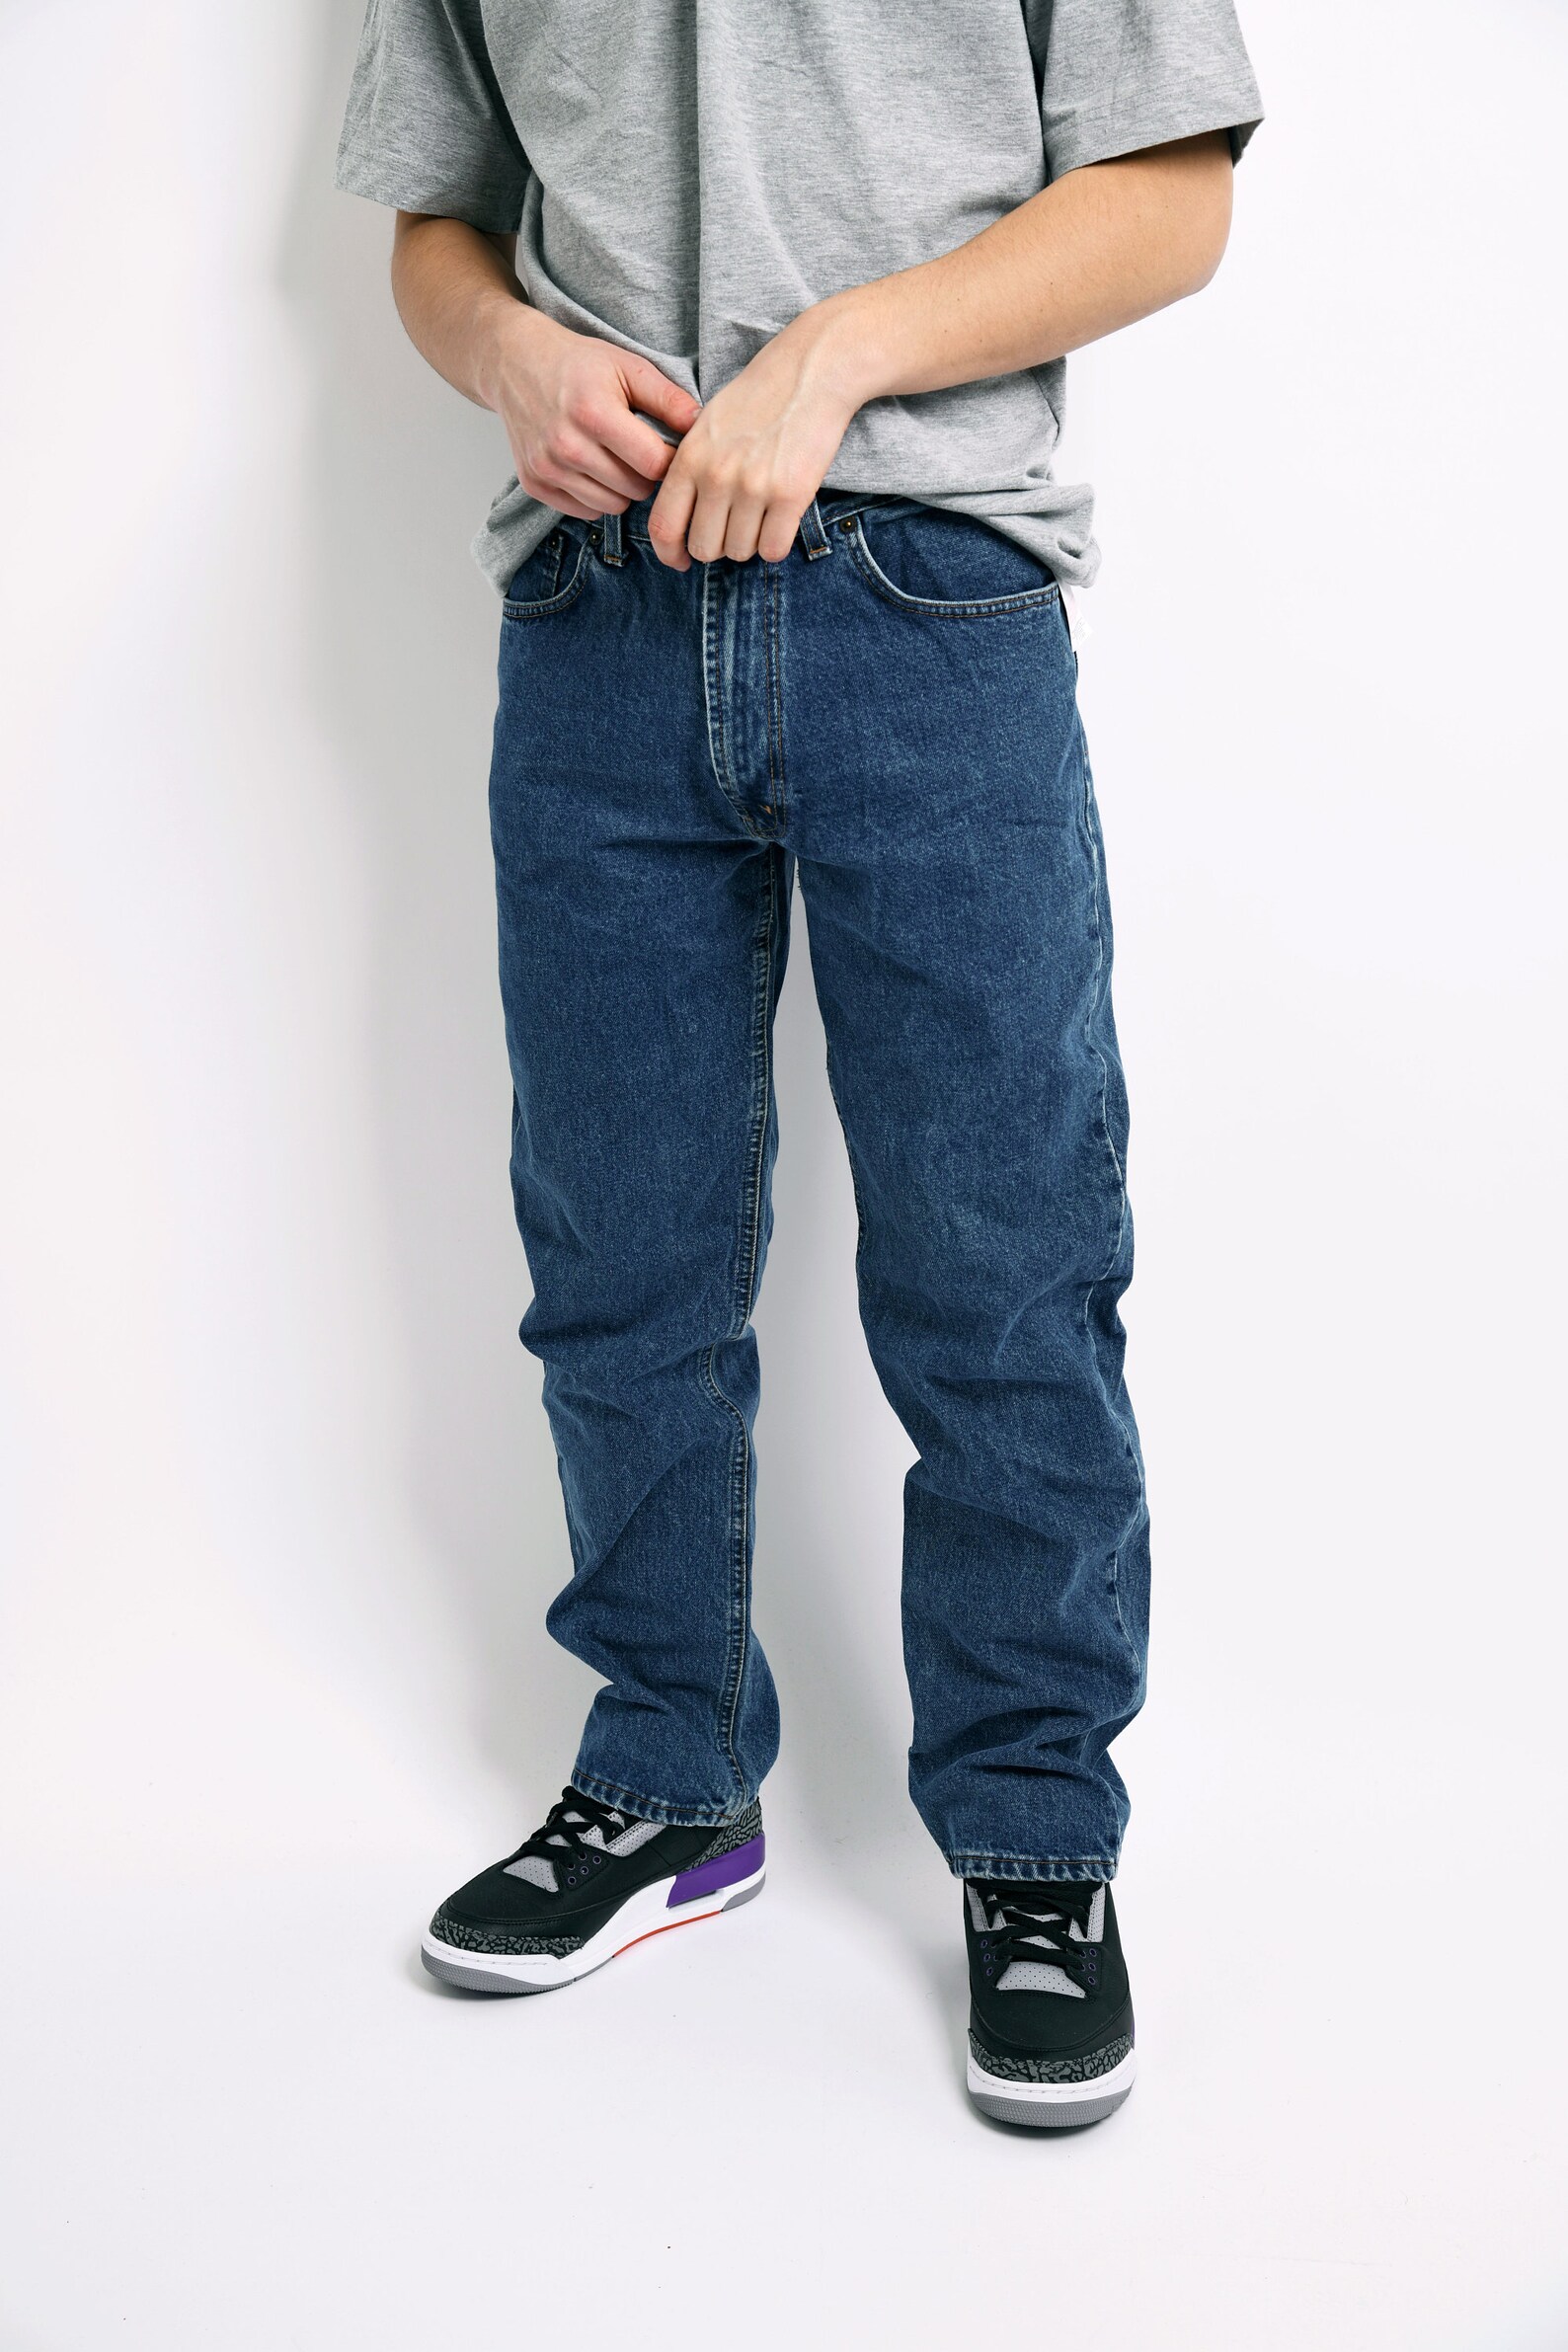 Vintage men's 90s jeans 80s fashion dark blue washed | Etsy